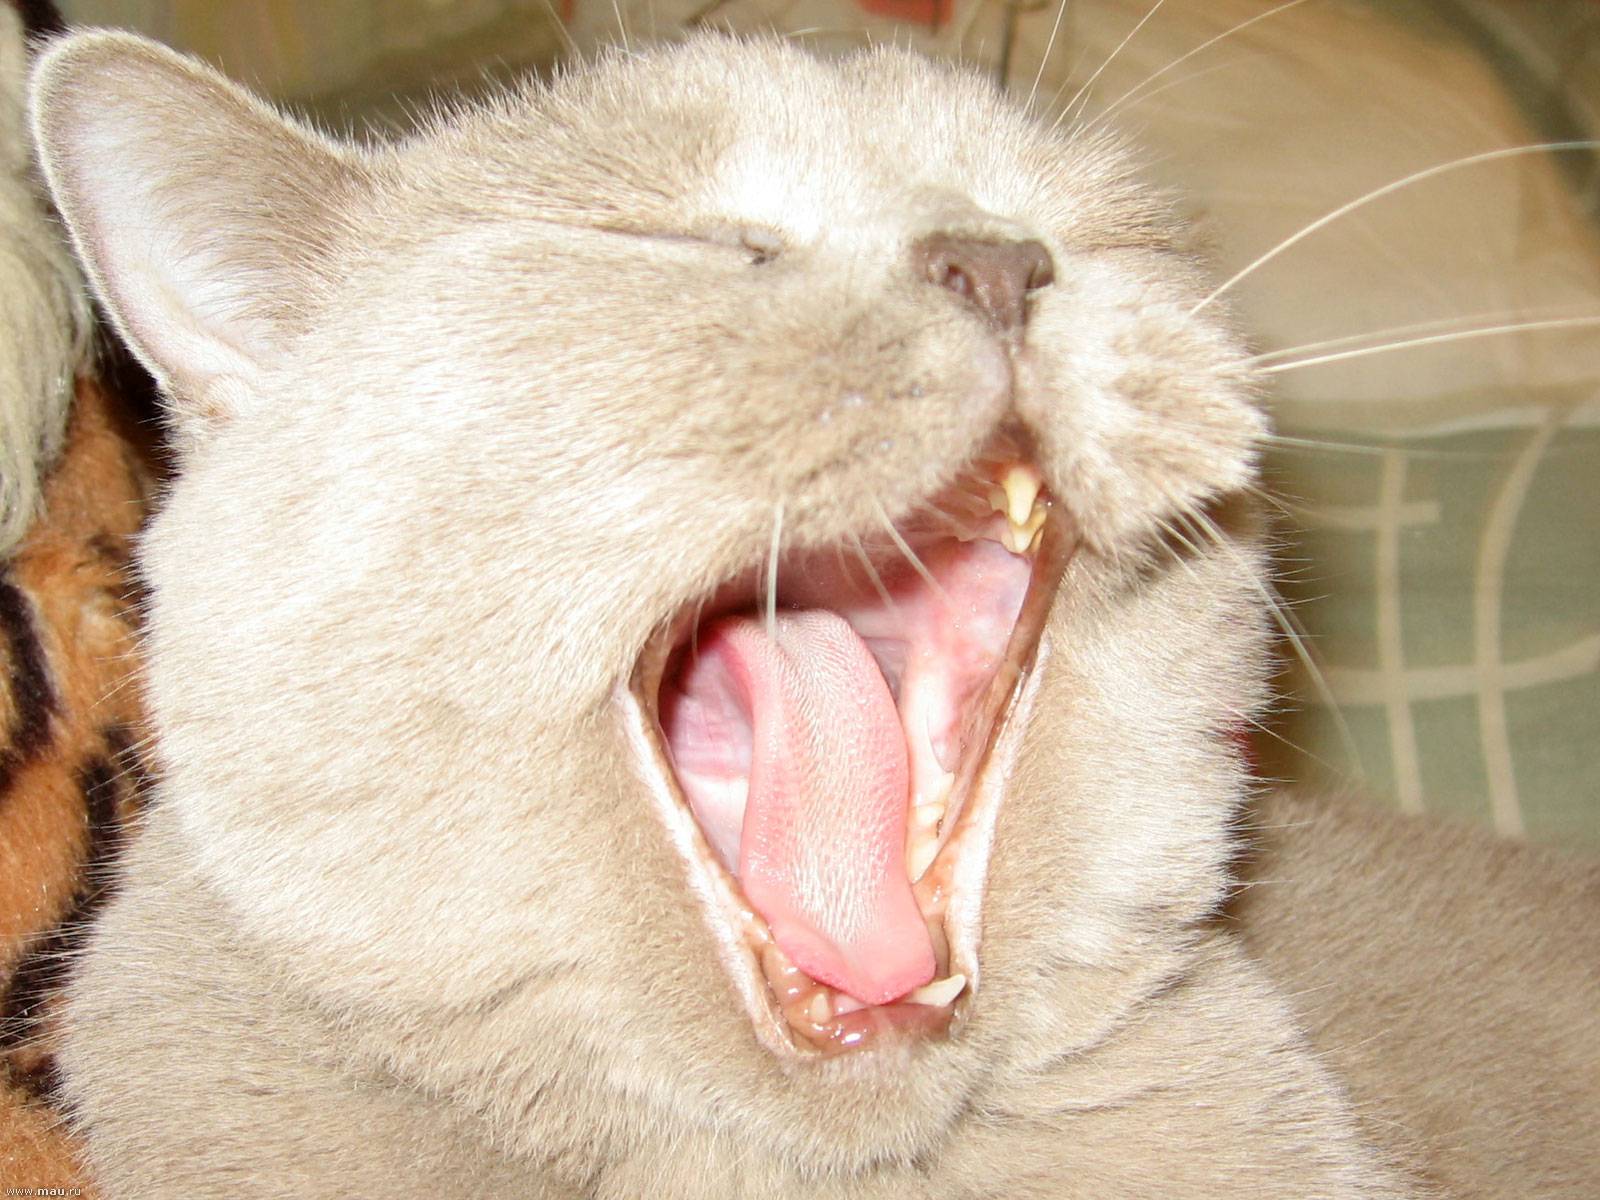 Кошачий язык: как понять своих кошек и котов, как человеку говорить с питомцем, «словарь-переводчик» для расшифровки звуков и жестов